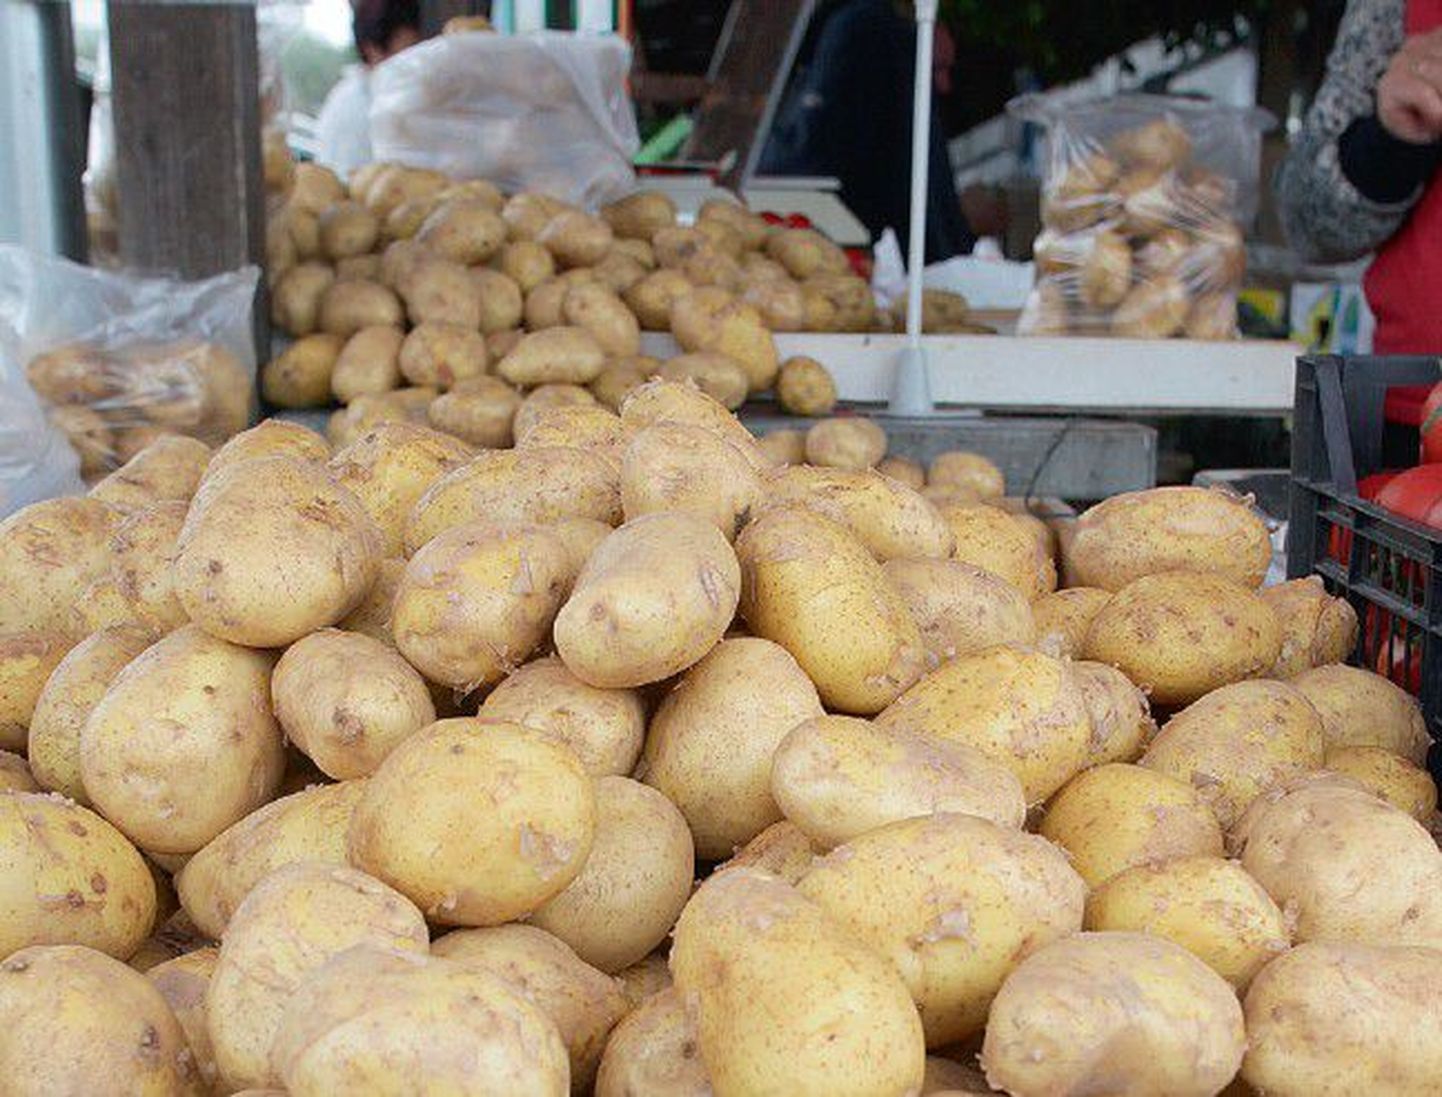 Eesti kartuli kõrge omahind võrreldes importkartuliga paneb väiksemad kasvatajad eriti keerulisse seisu. See on ka üks põhjuseid, miks mitmed väiksemad kasvatajad on kartulikasvatusest loobunud.